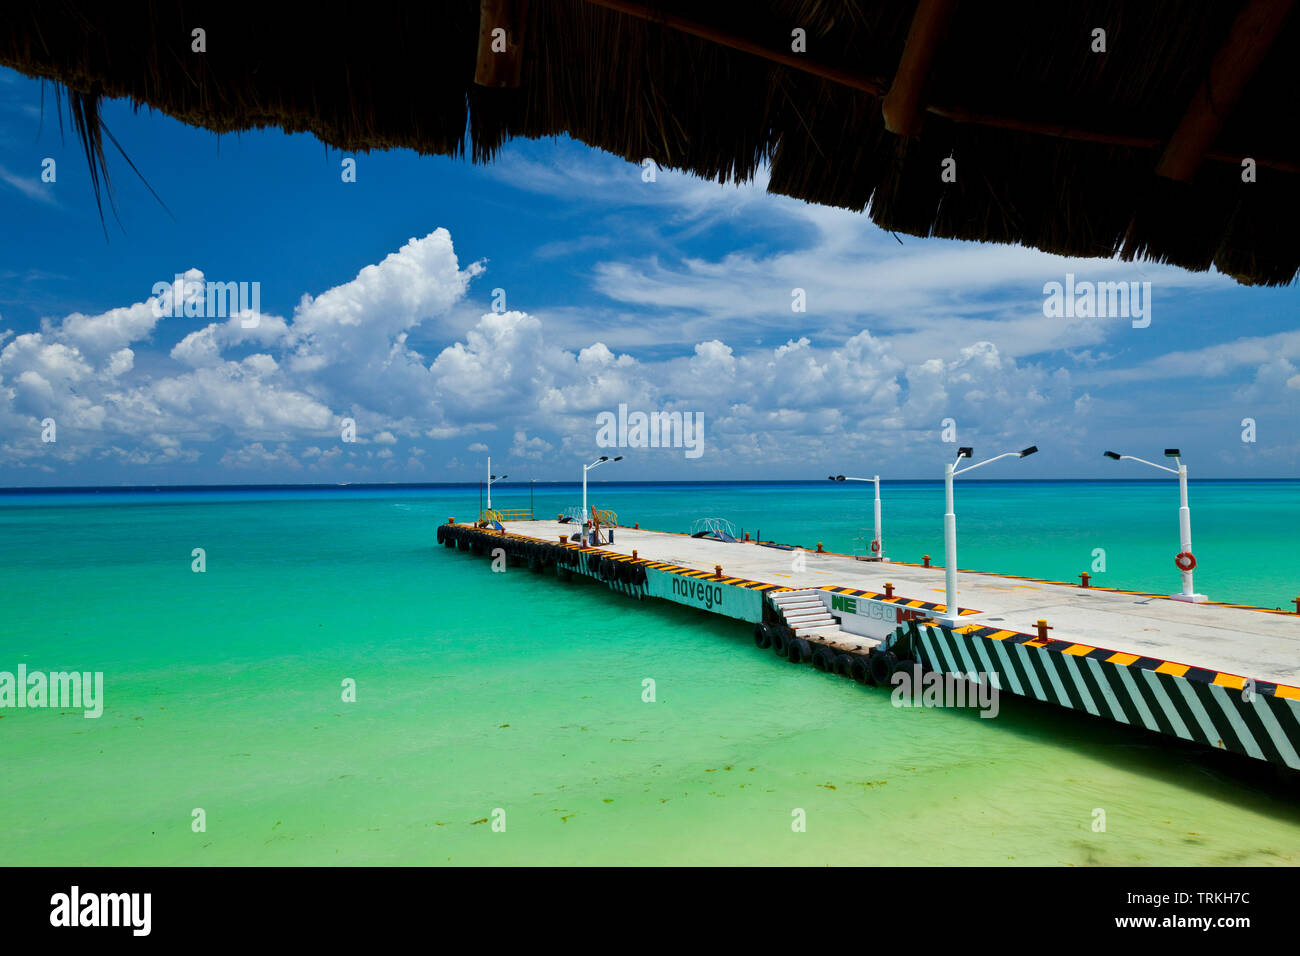 Mar Caribe, Playa del Carmen, Riviera Maya, Estado de Quintana Roo, Península de Yucatán, México, América Stock Photo